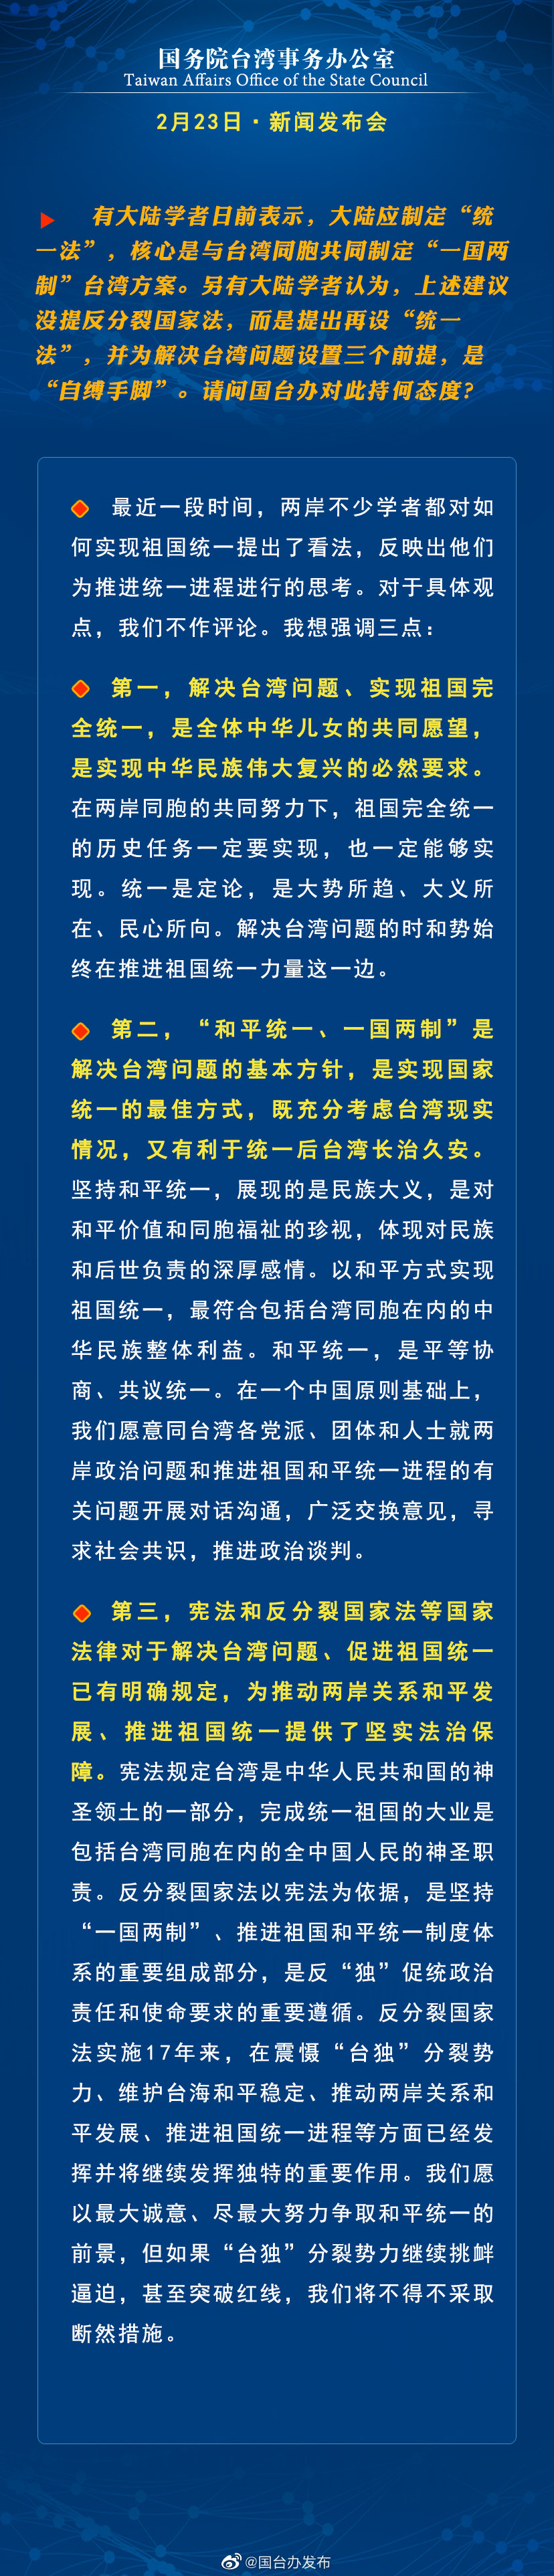 国务院台湾事务办公室2月23日·新闻发布会